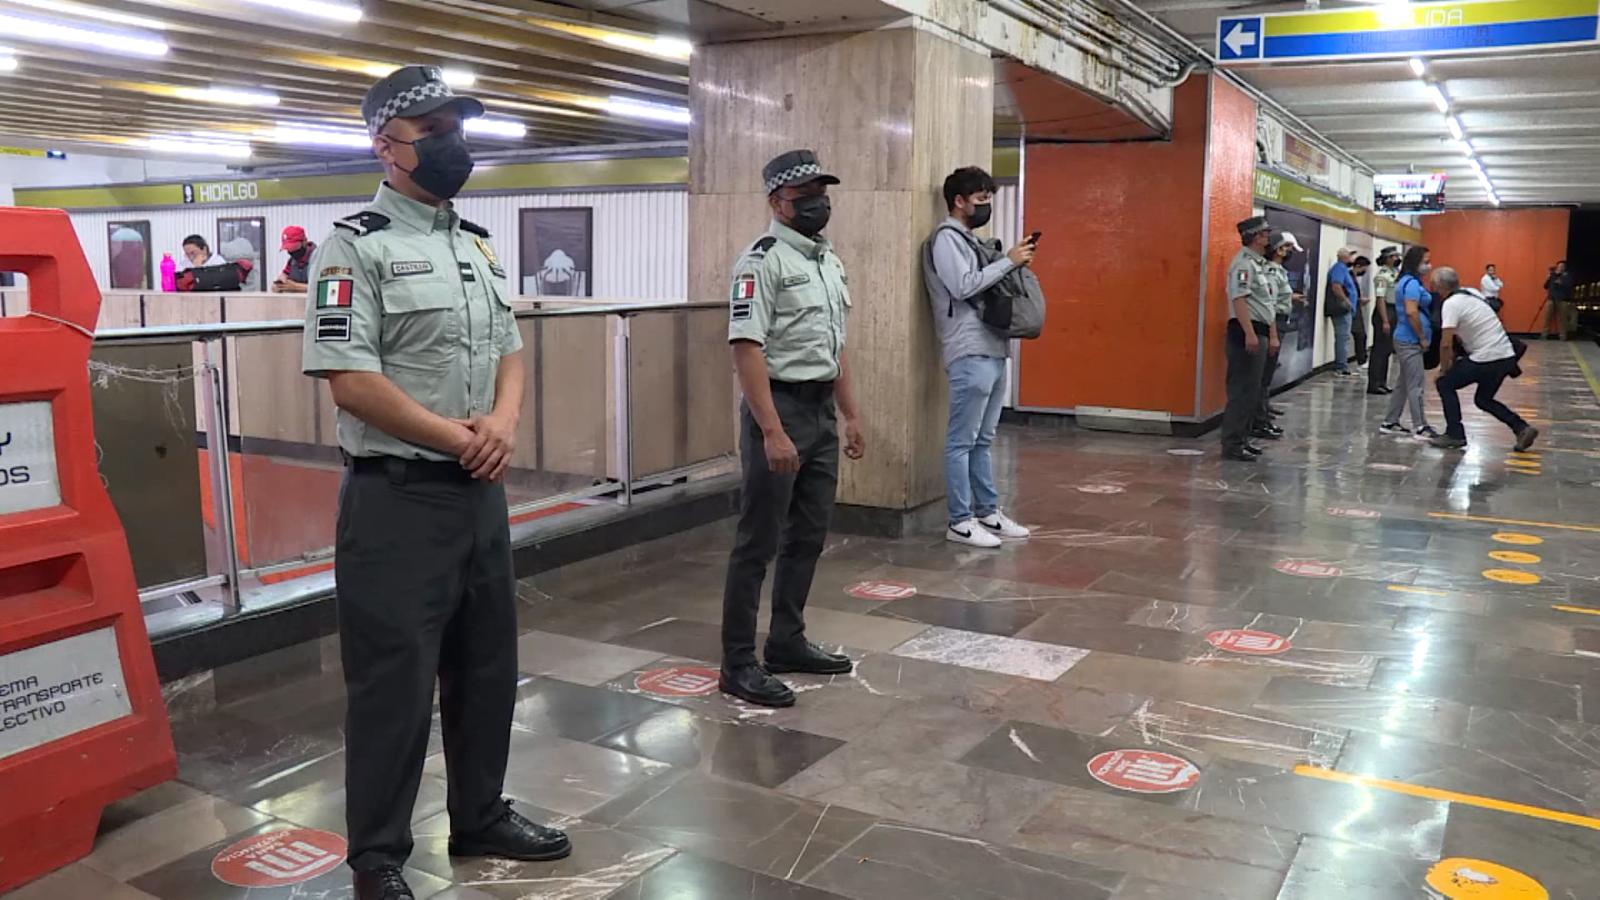 Guardia Nacional en el Metro pone en riesgo los derechos humanos |  Video